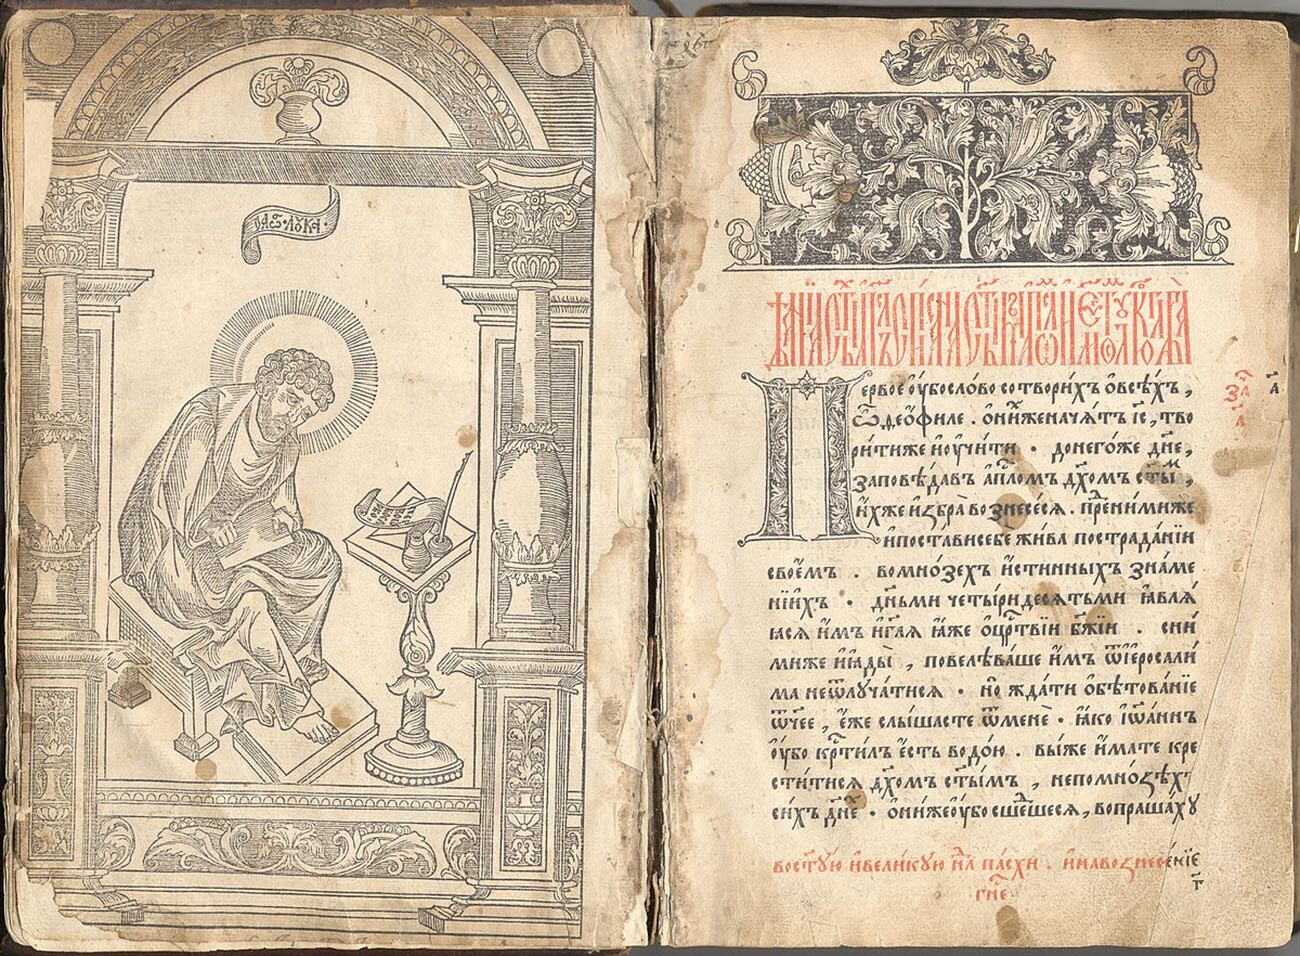 Les Actes des apôtres publié en 1563/1564 à Moscou 